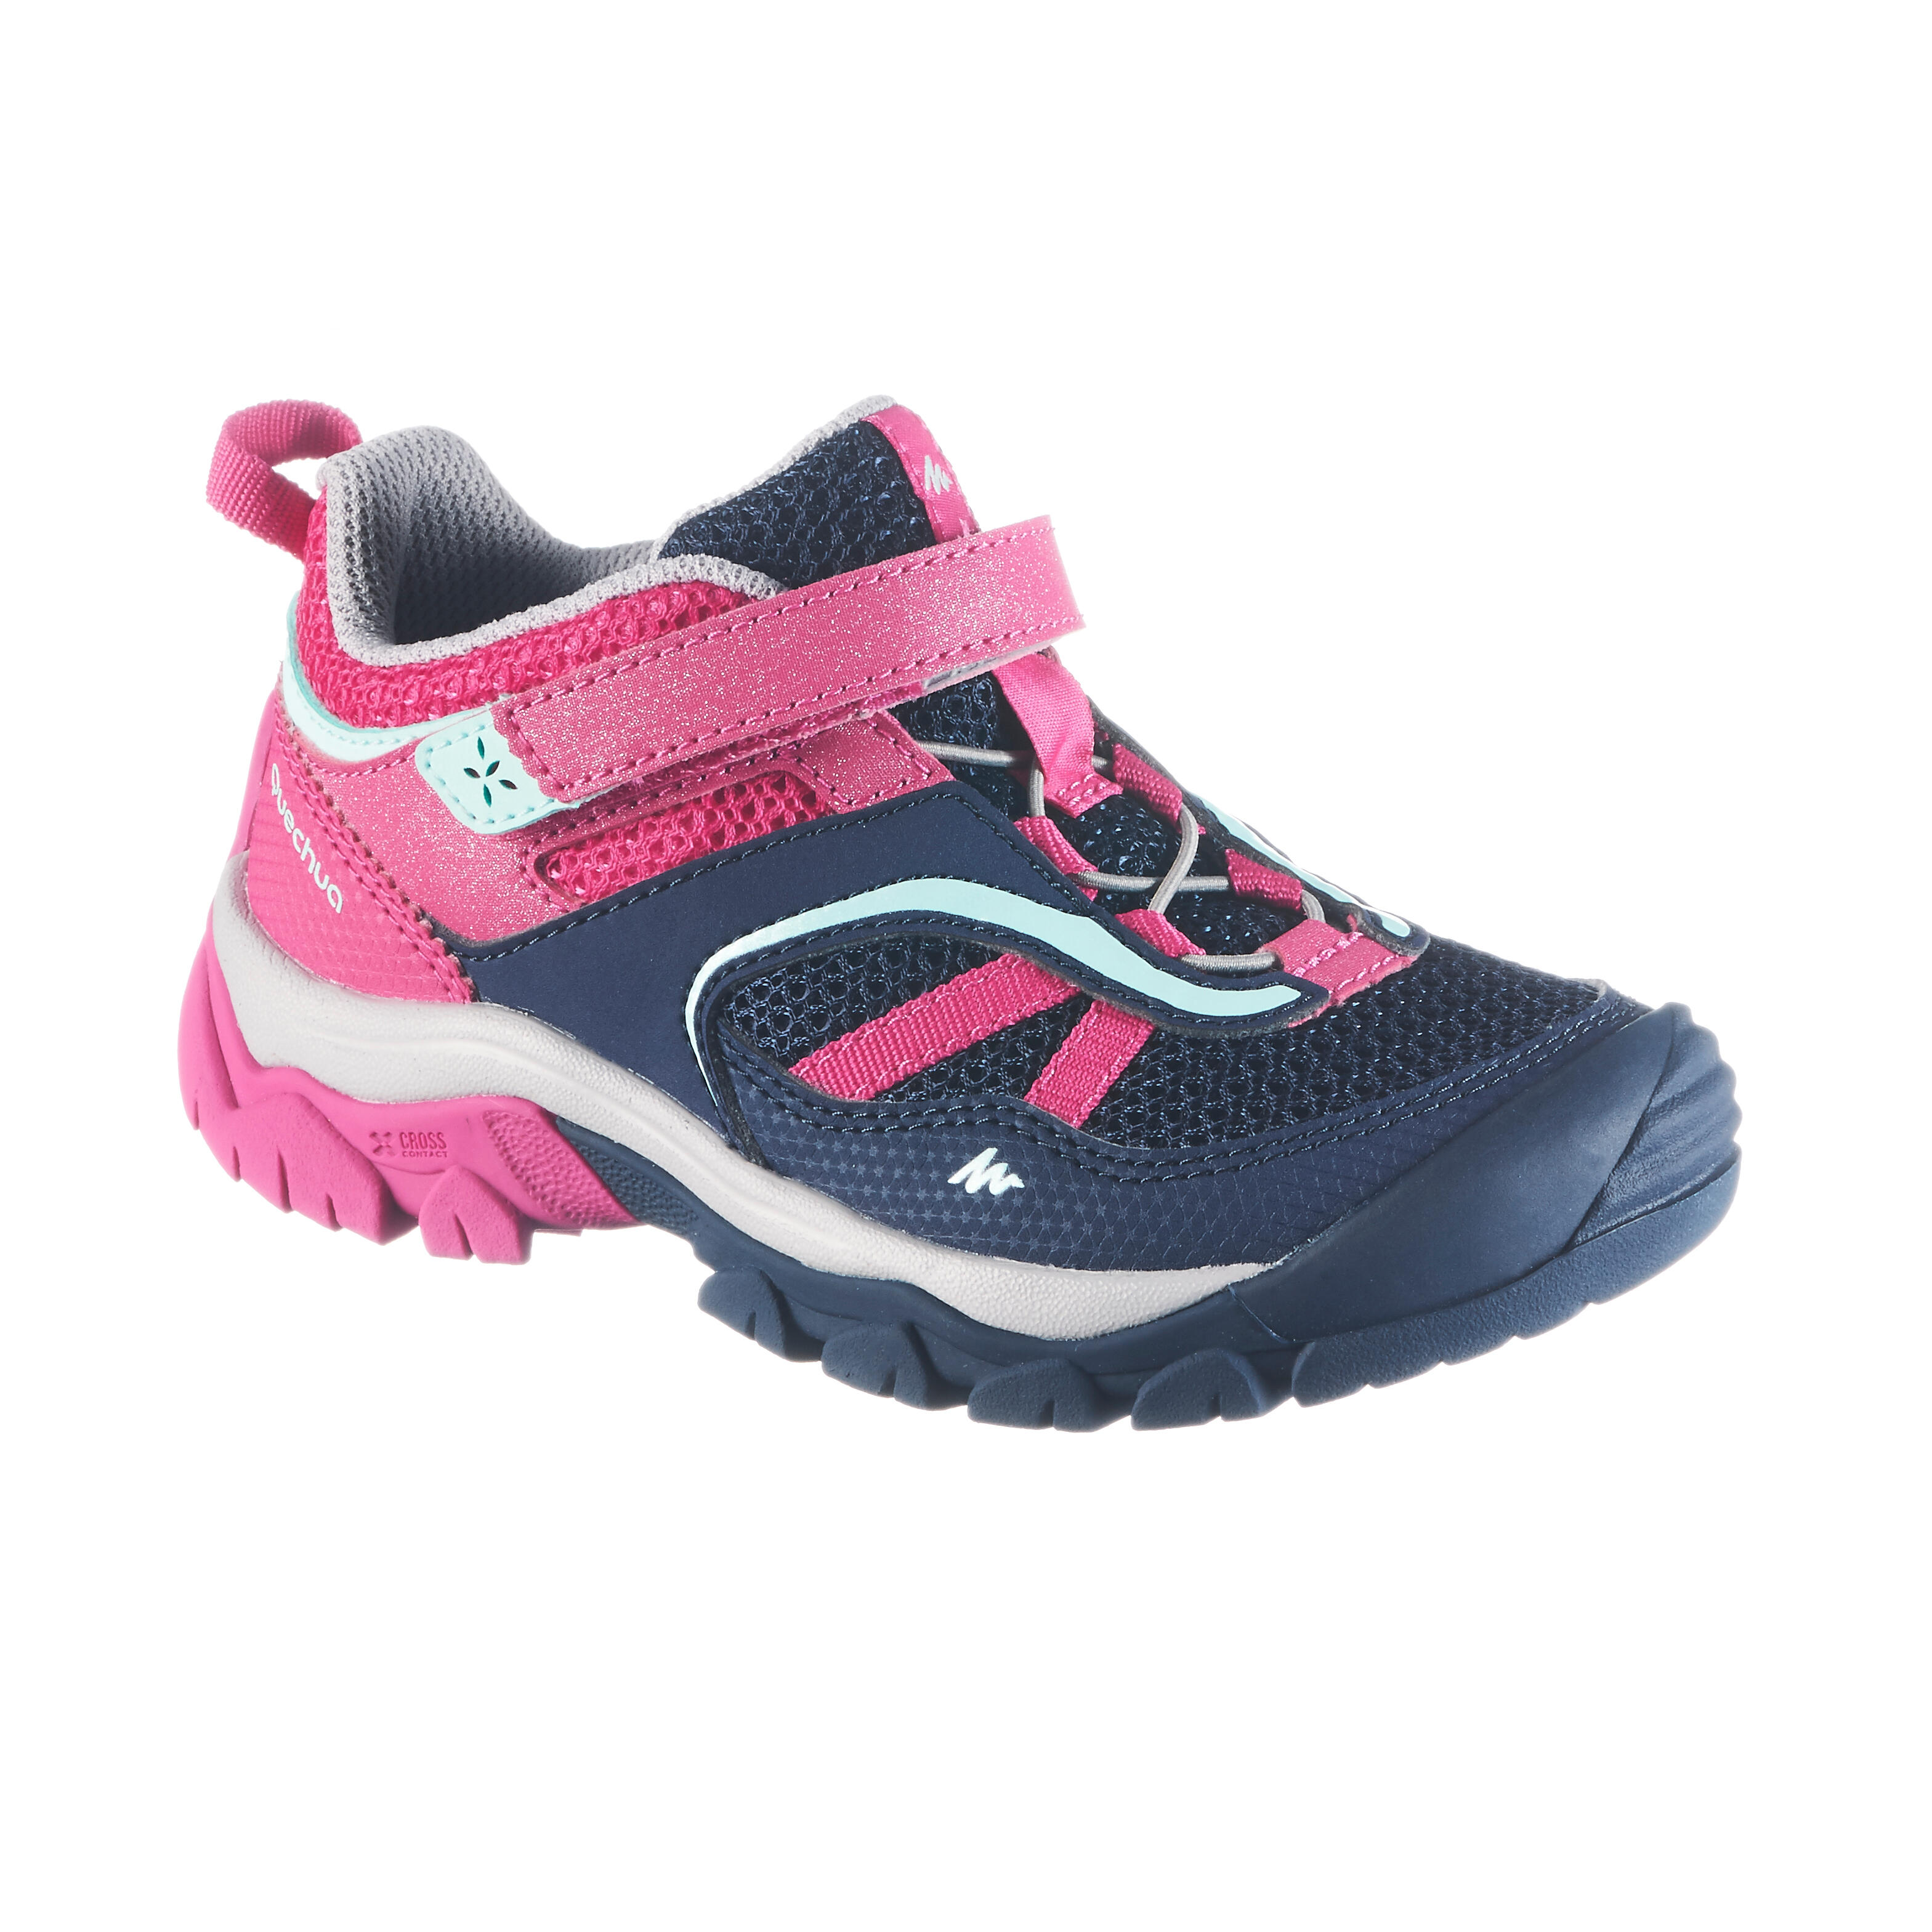 Zapatillas de senderismo en montaña niña Crossrock KID Azul/rosada